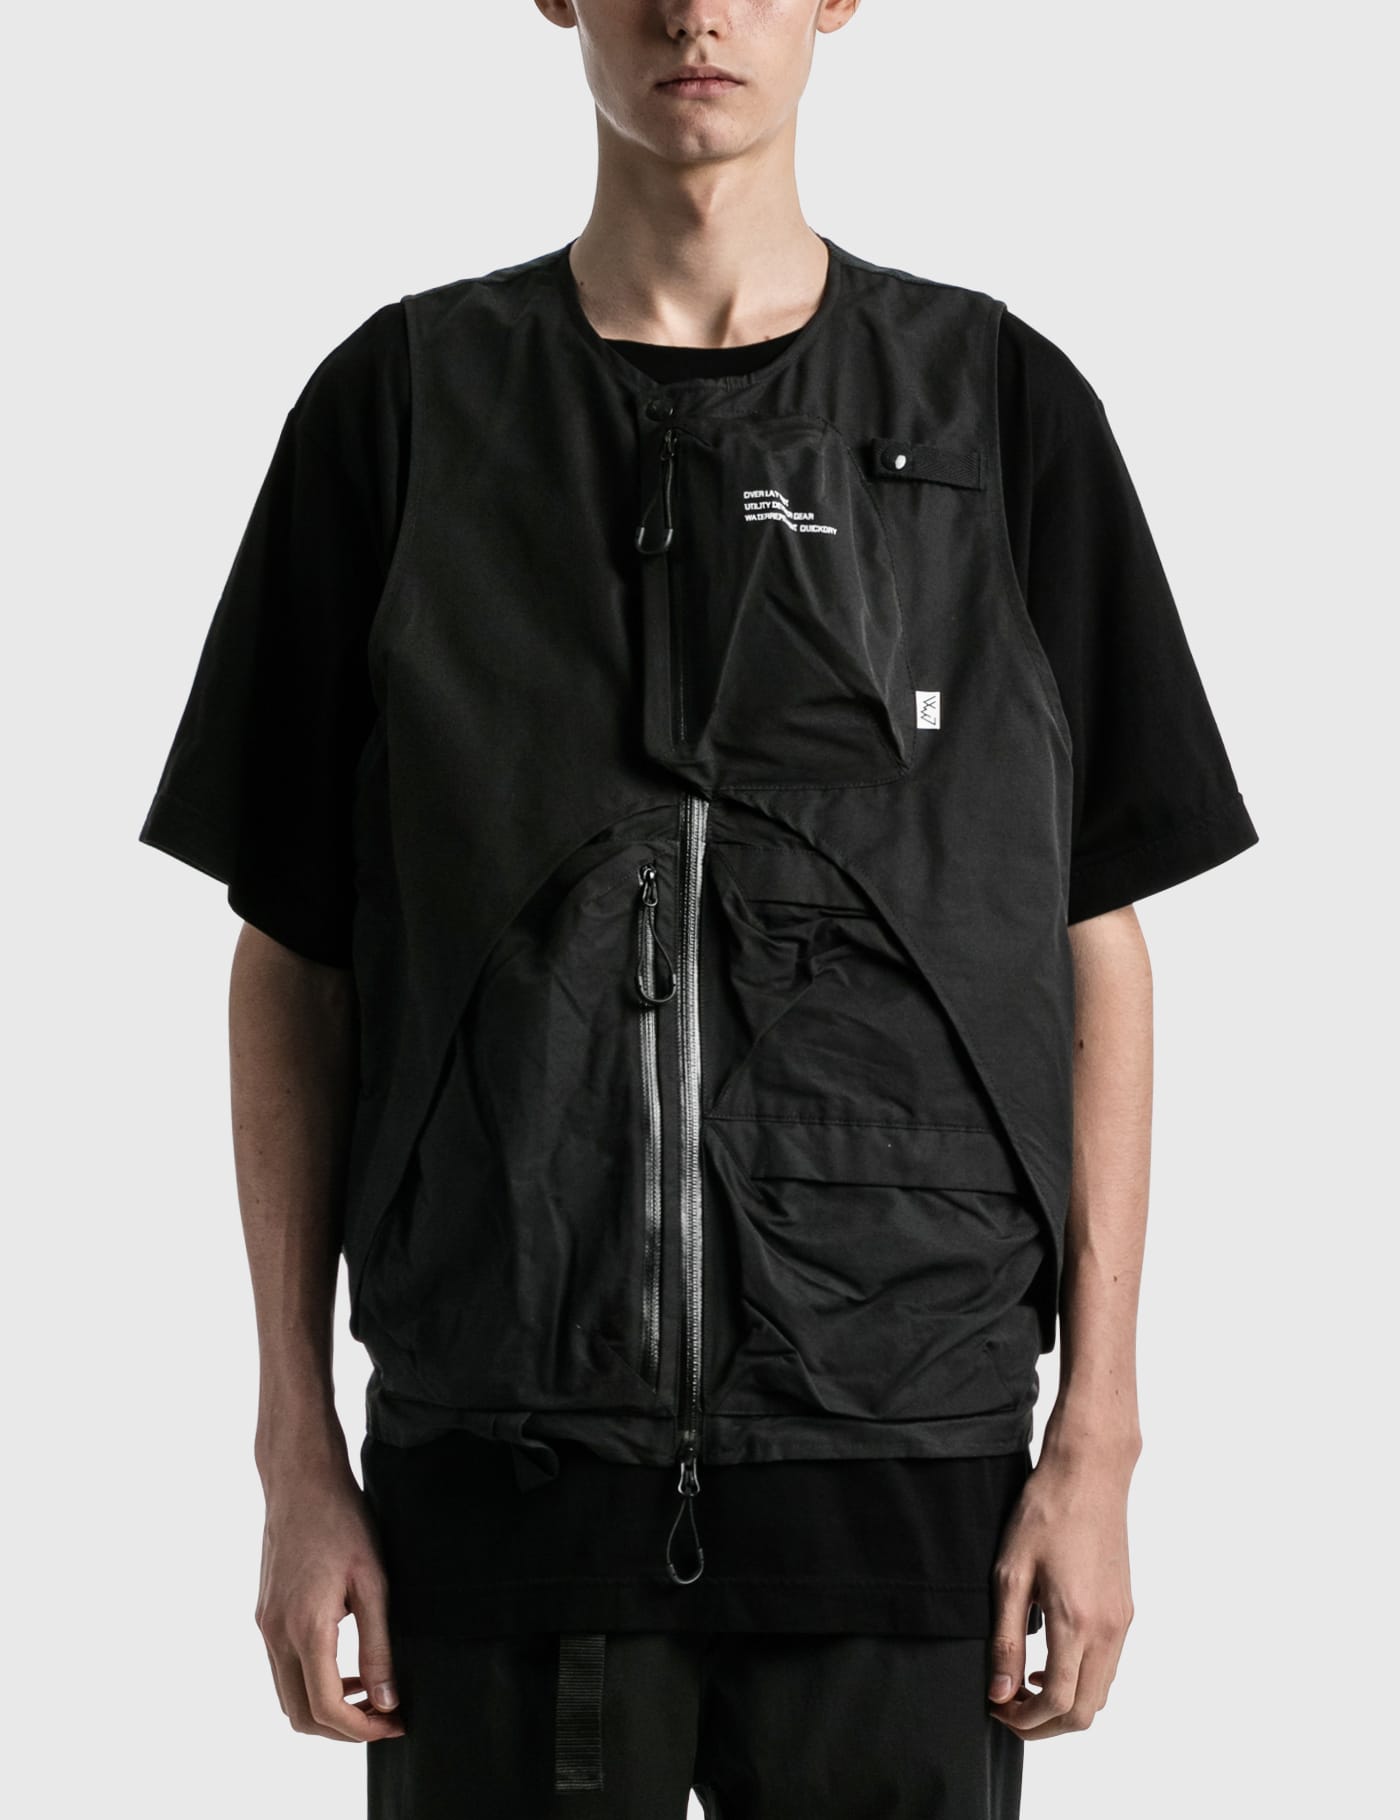 Comfy Outdoor Garment - eye_C × Comfy Outdoor Garment Overlay Vest